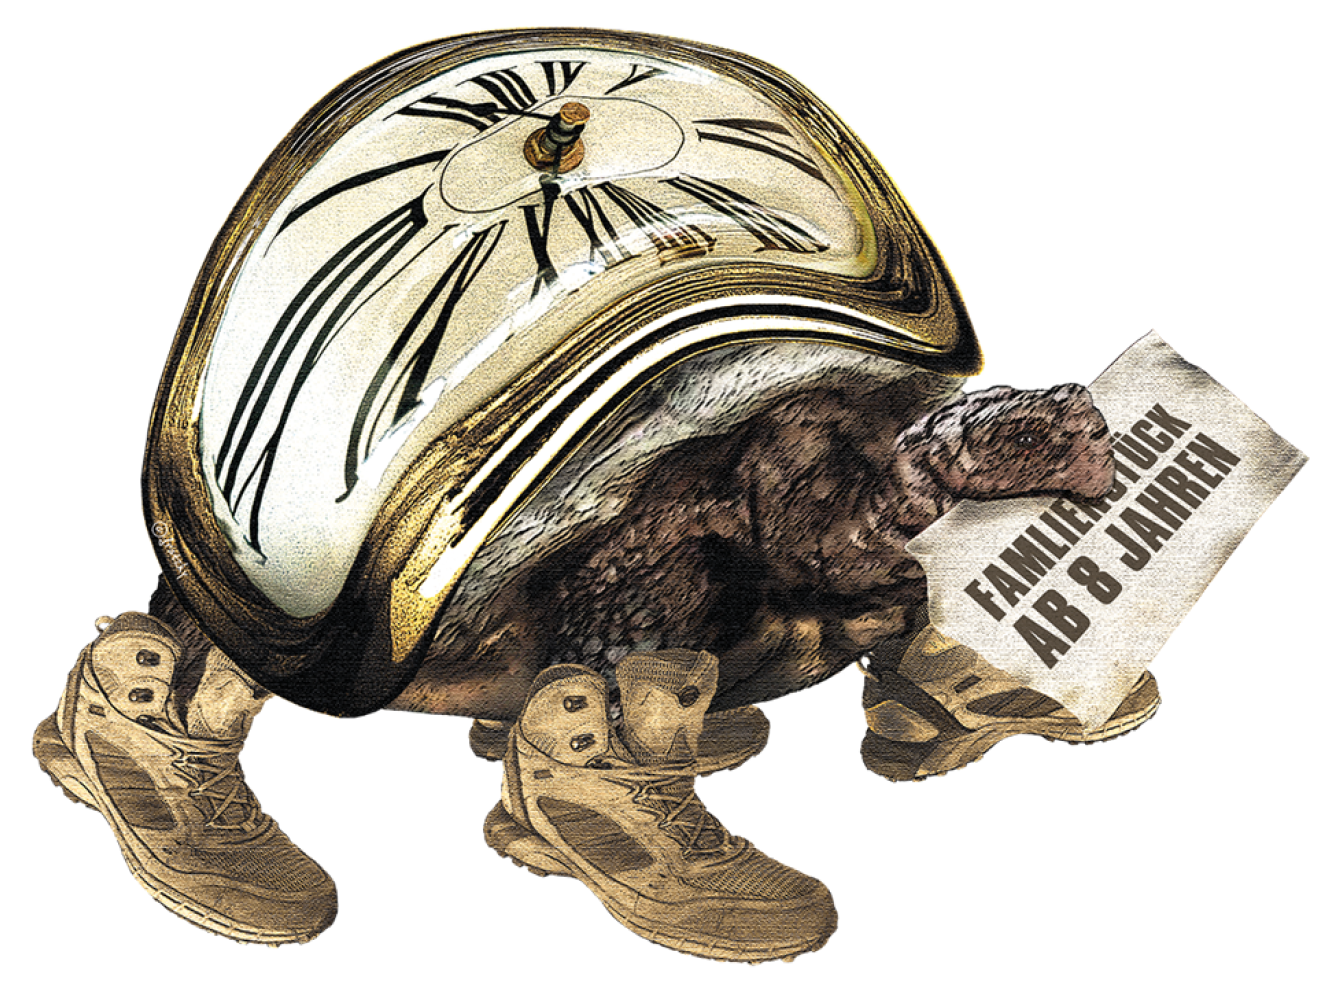 Schildkröte, deren Panzer aus einer Uhr besteht, und einen Zettel im Mund trägt.